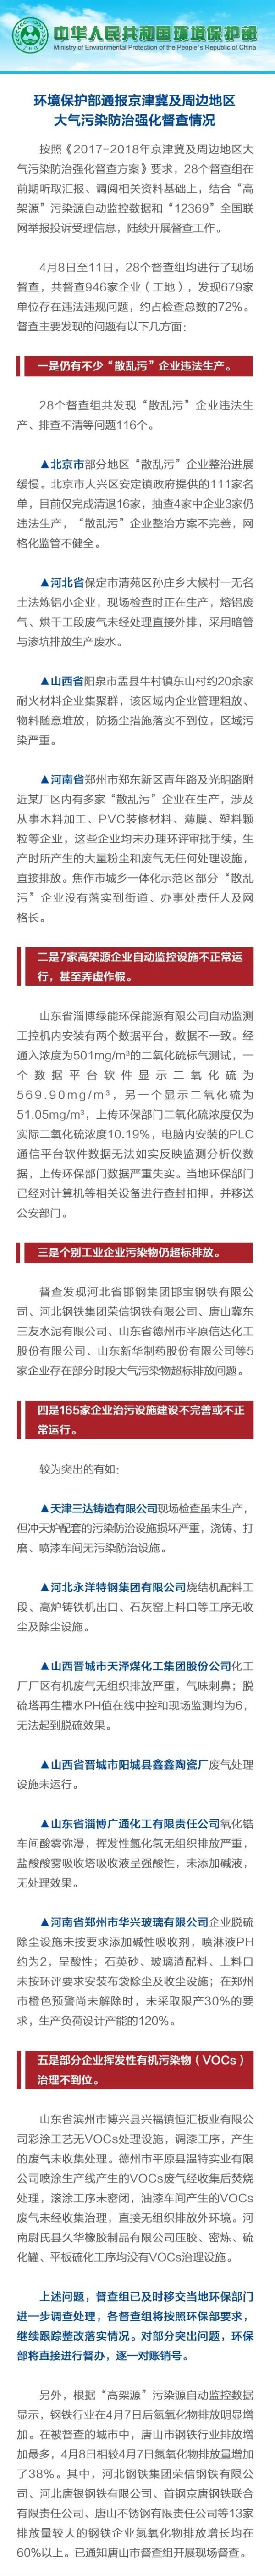 京津冀及周边大气污染防治督查:679家企业违规